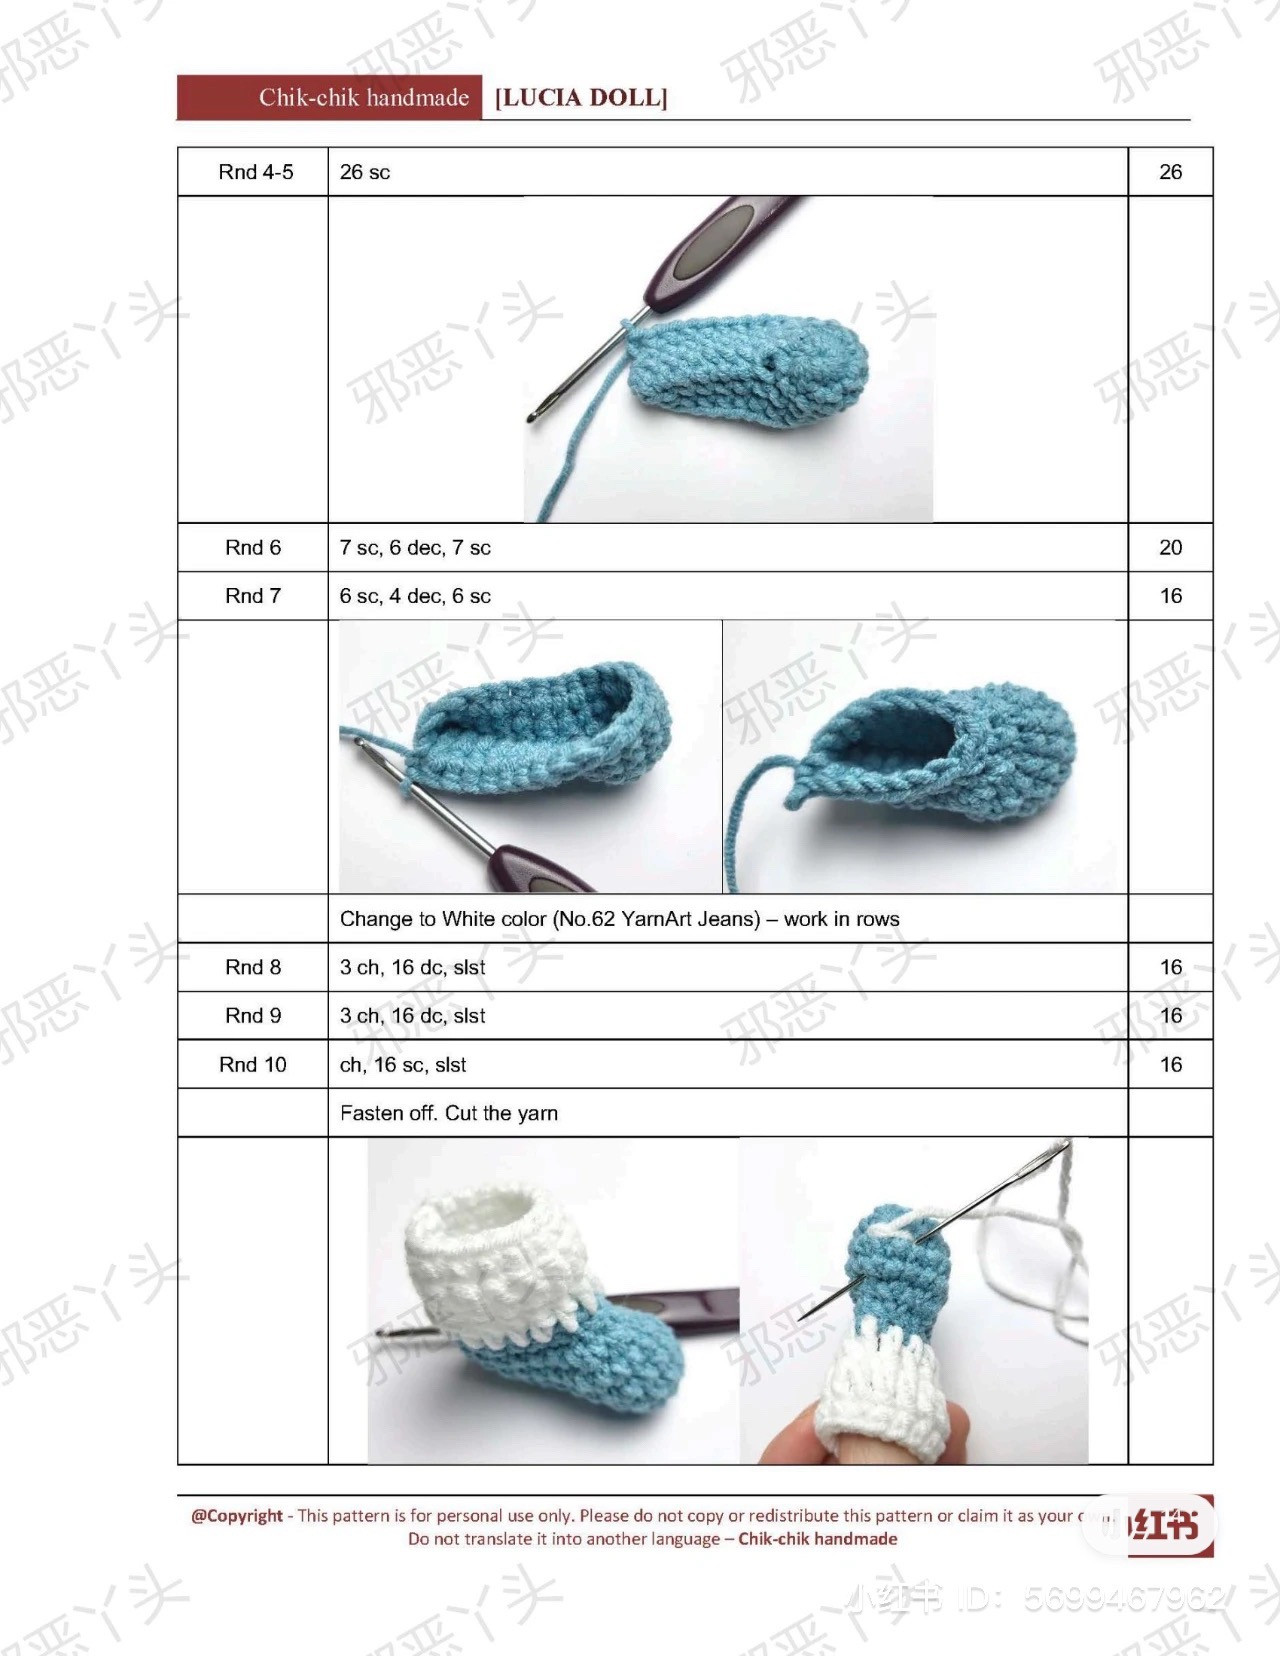 lucia doll crochet pattern